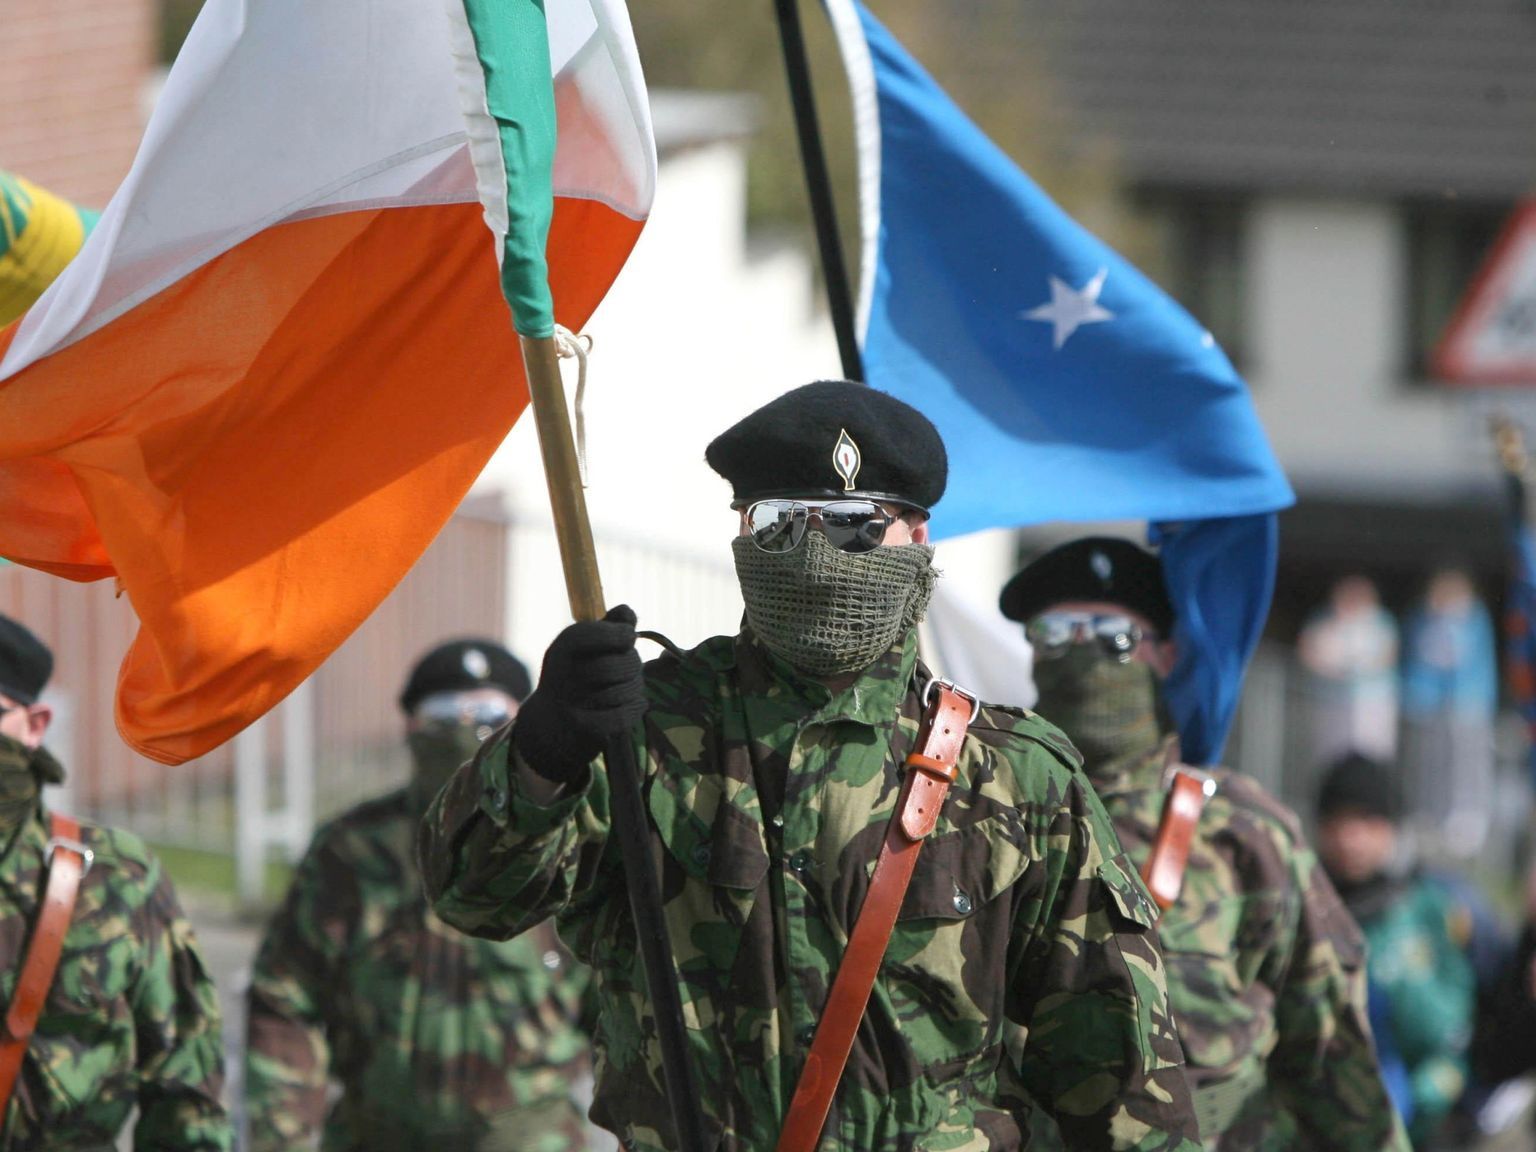 Ira перевод. Ира ирландская Республиканская армия. Ирландские сепаратисты Ира. Ира ирландская Революционная армия. I.R.A ирландская Республиканская армия.